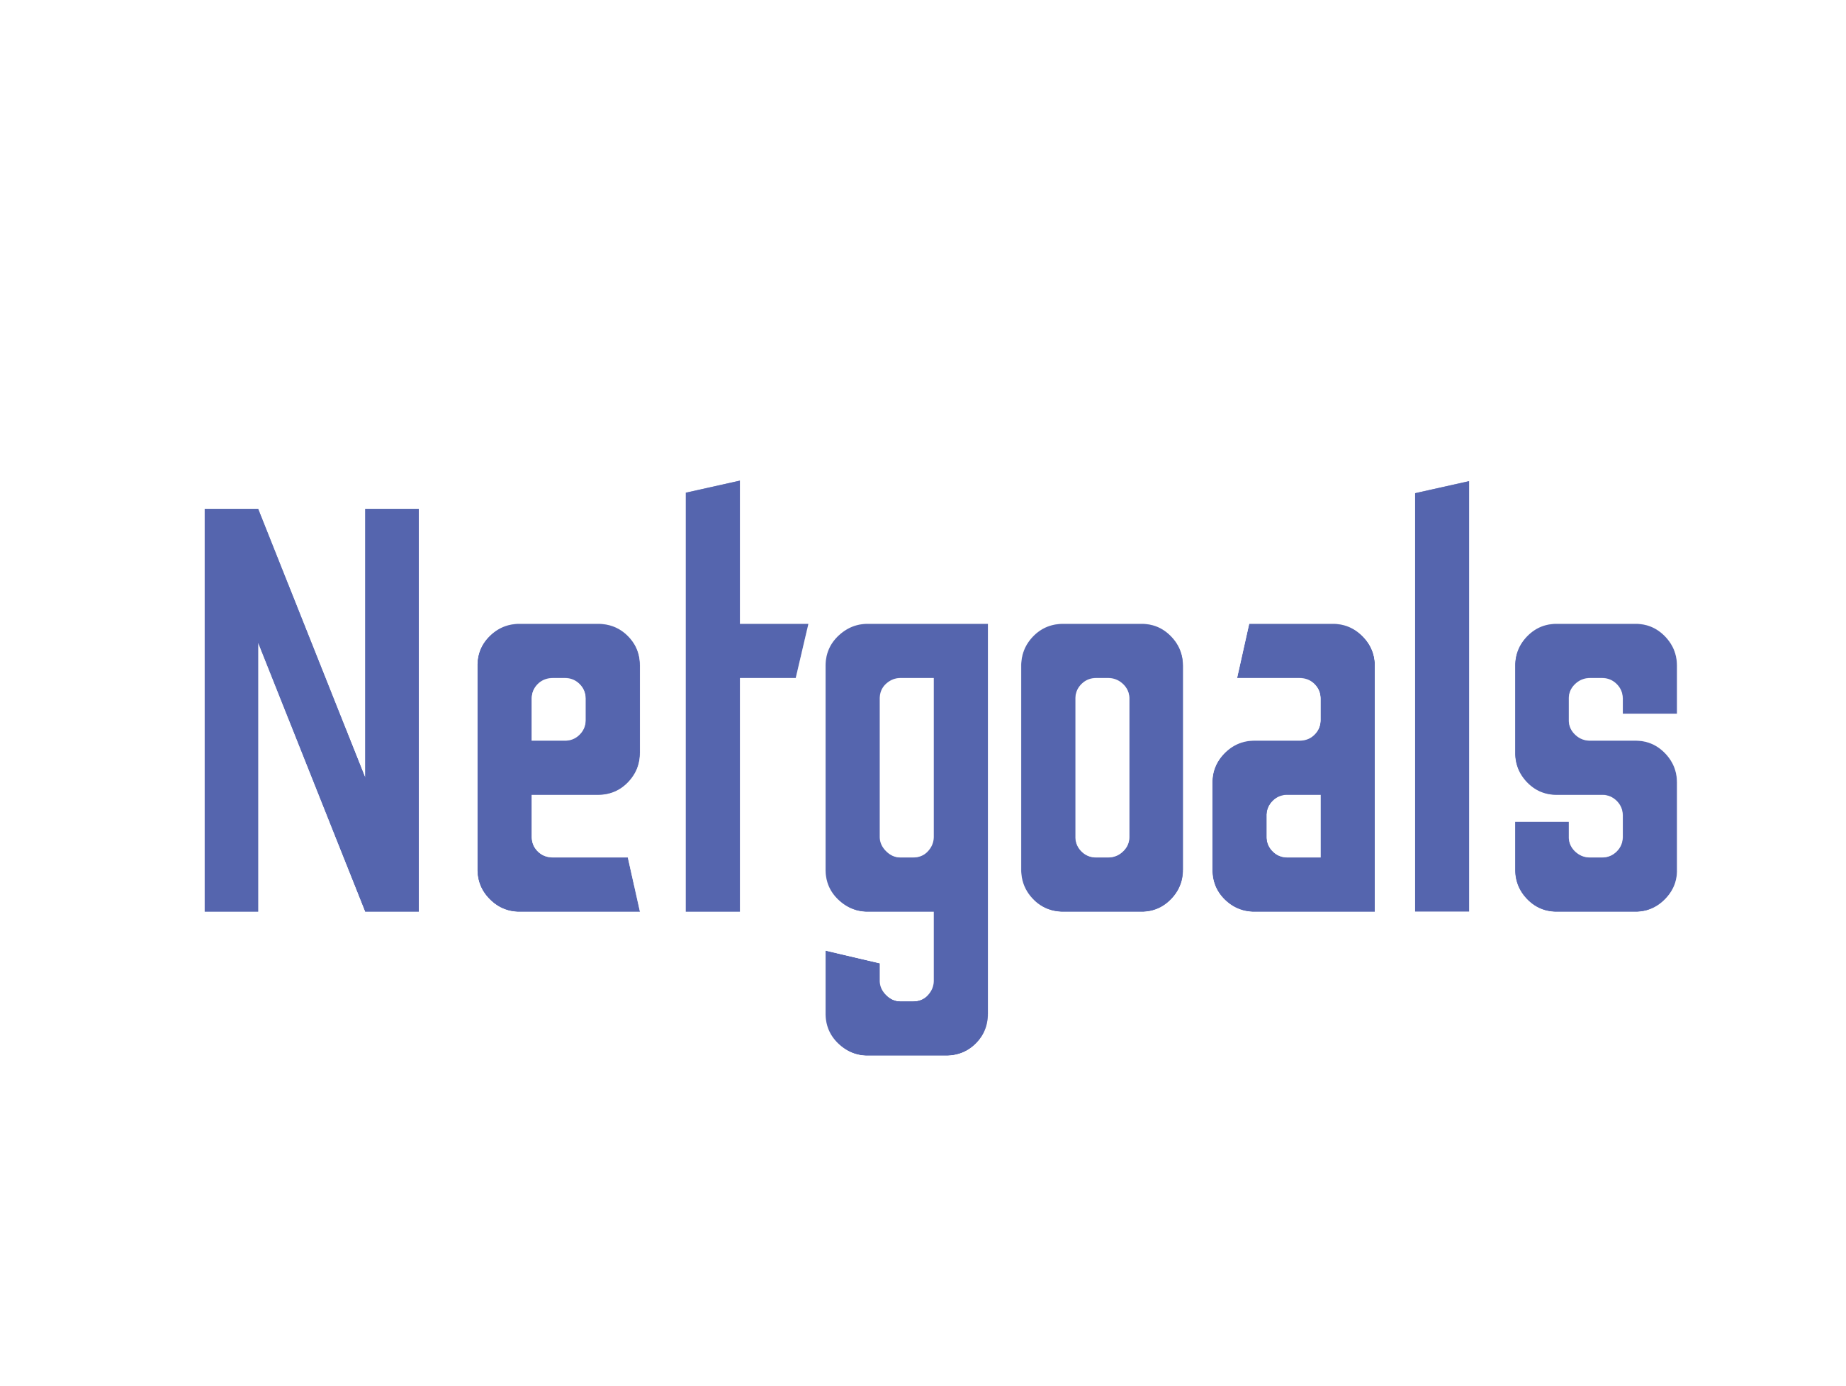 Netgoals full color logo